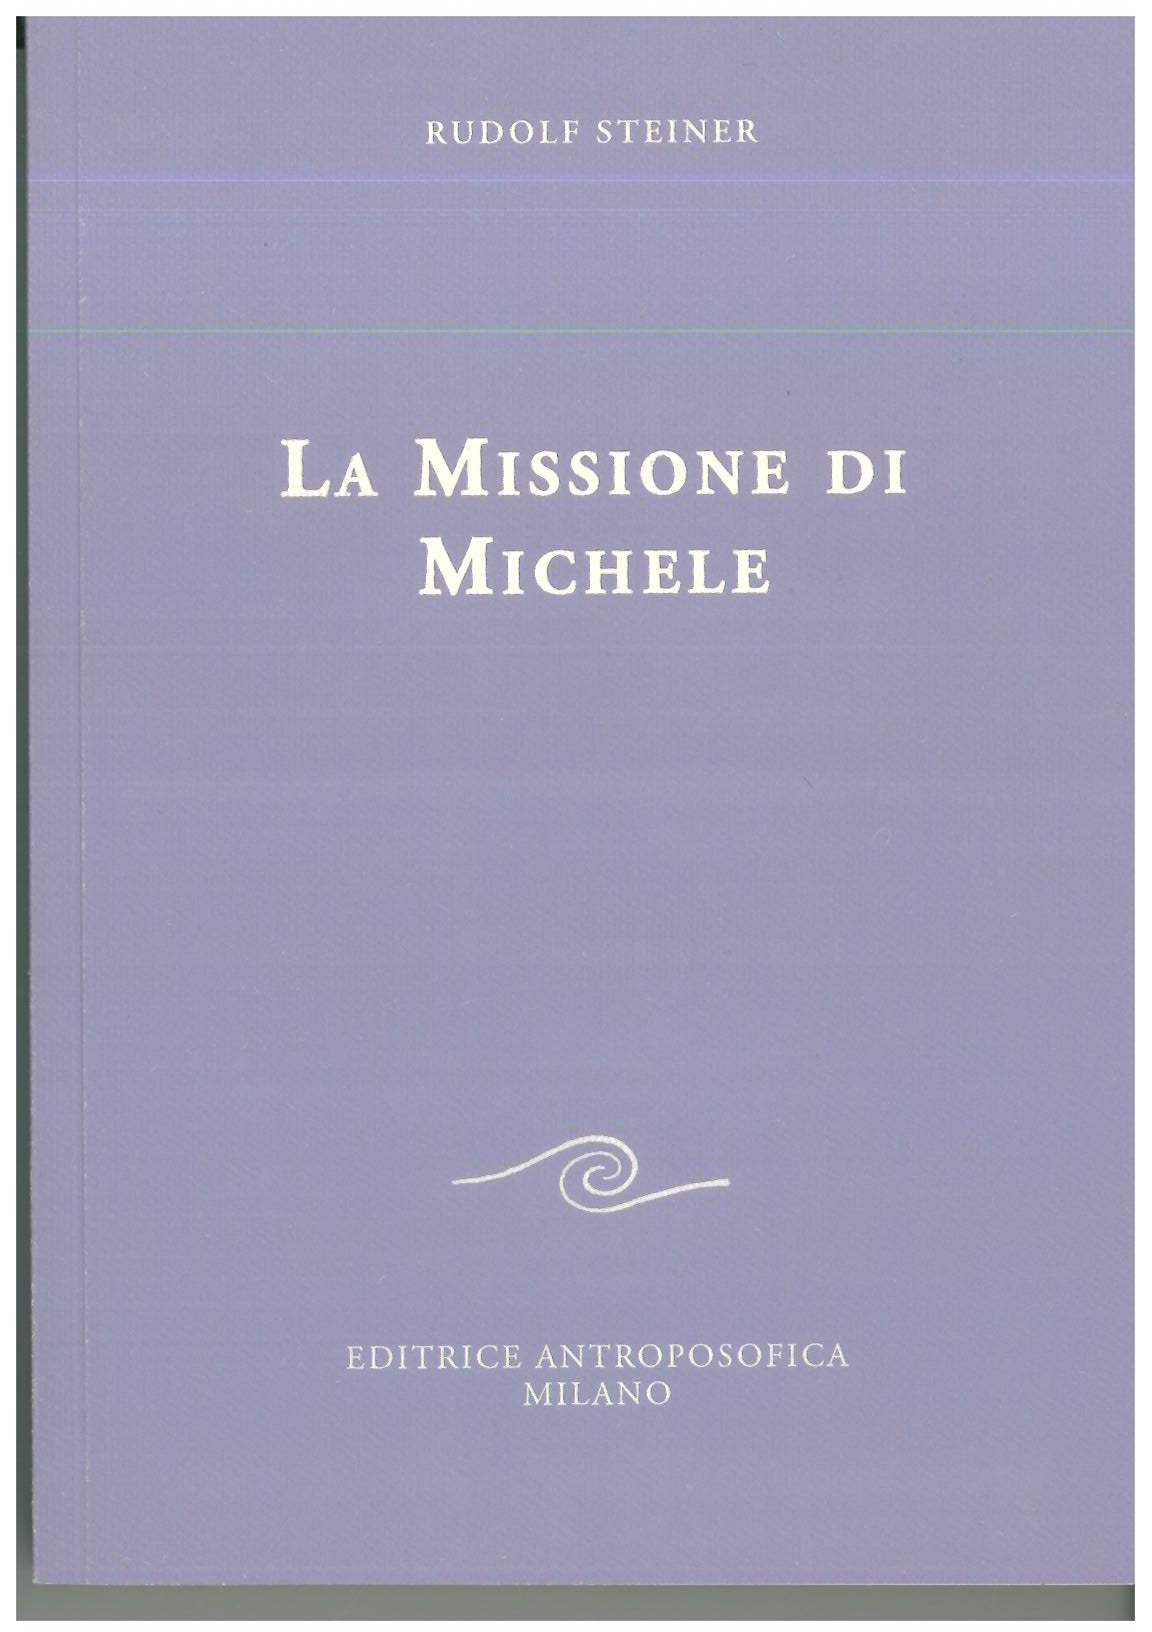 La missione di Michele - Rudolf Steiner